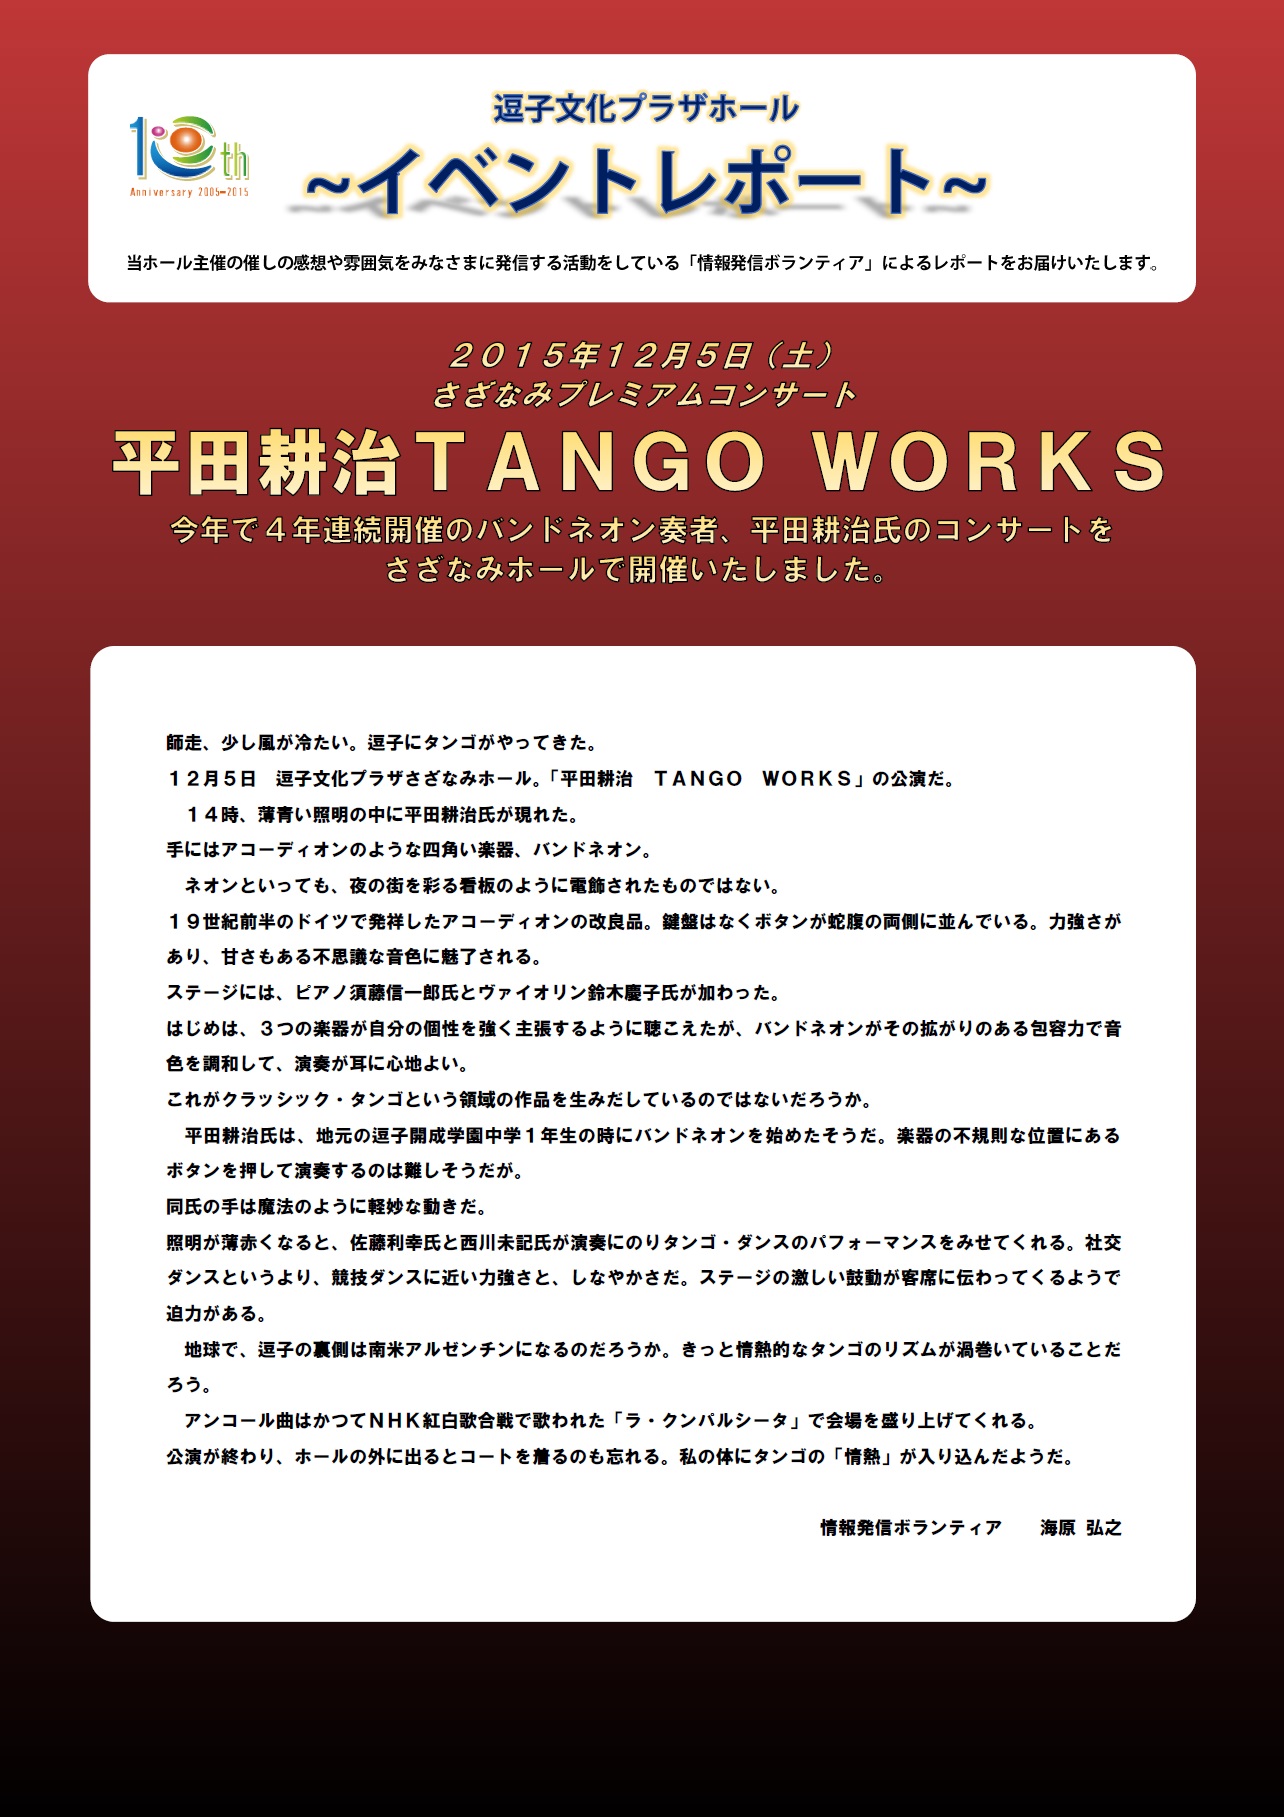 イベントレポート「平田耕治 TANGO WORKS」2015年12月5日開催